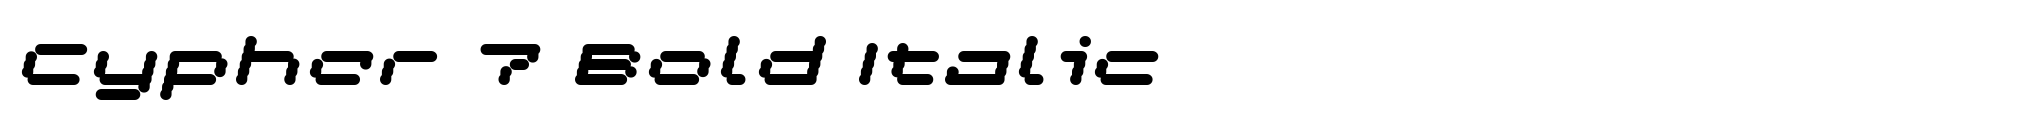 Cypher 7 Bold Italic image